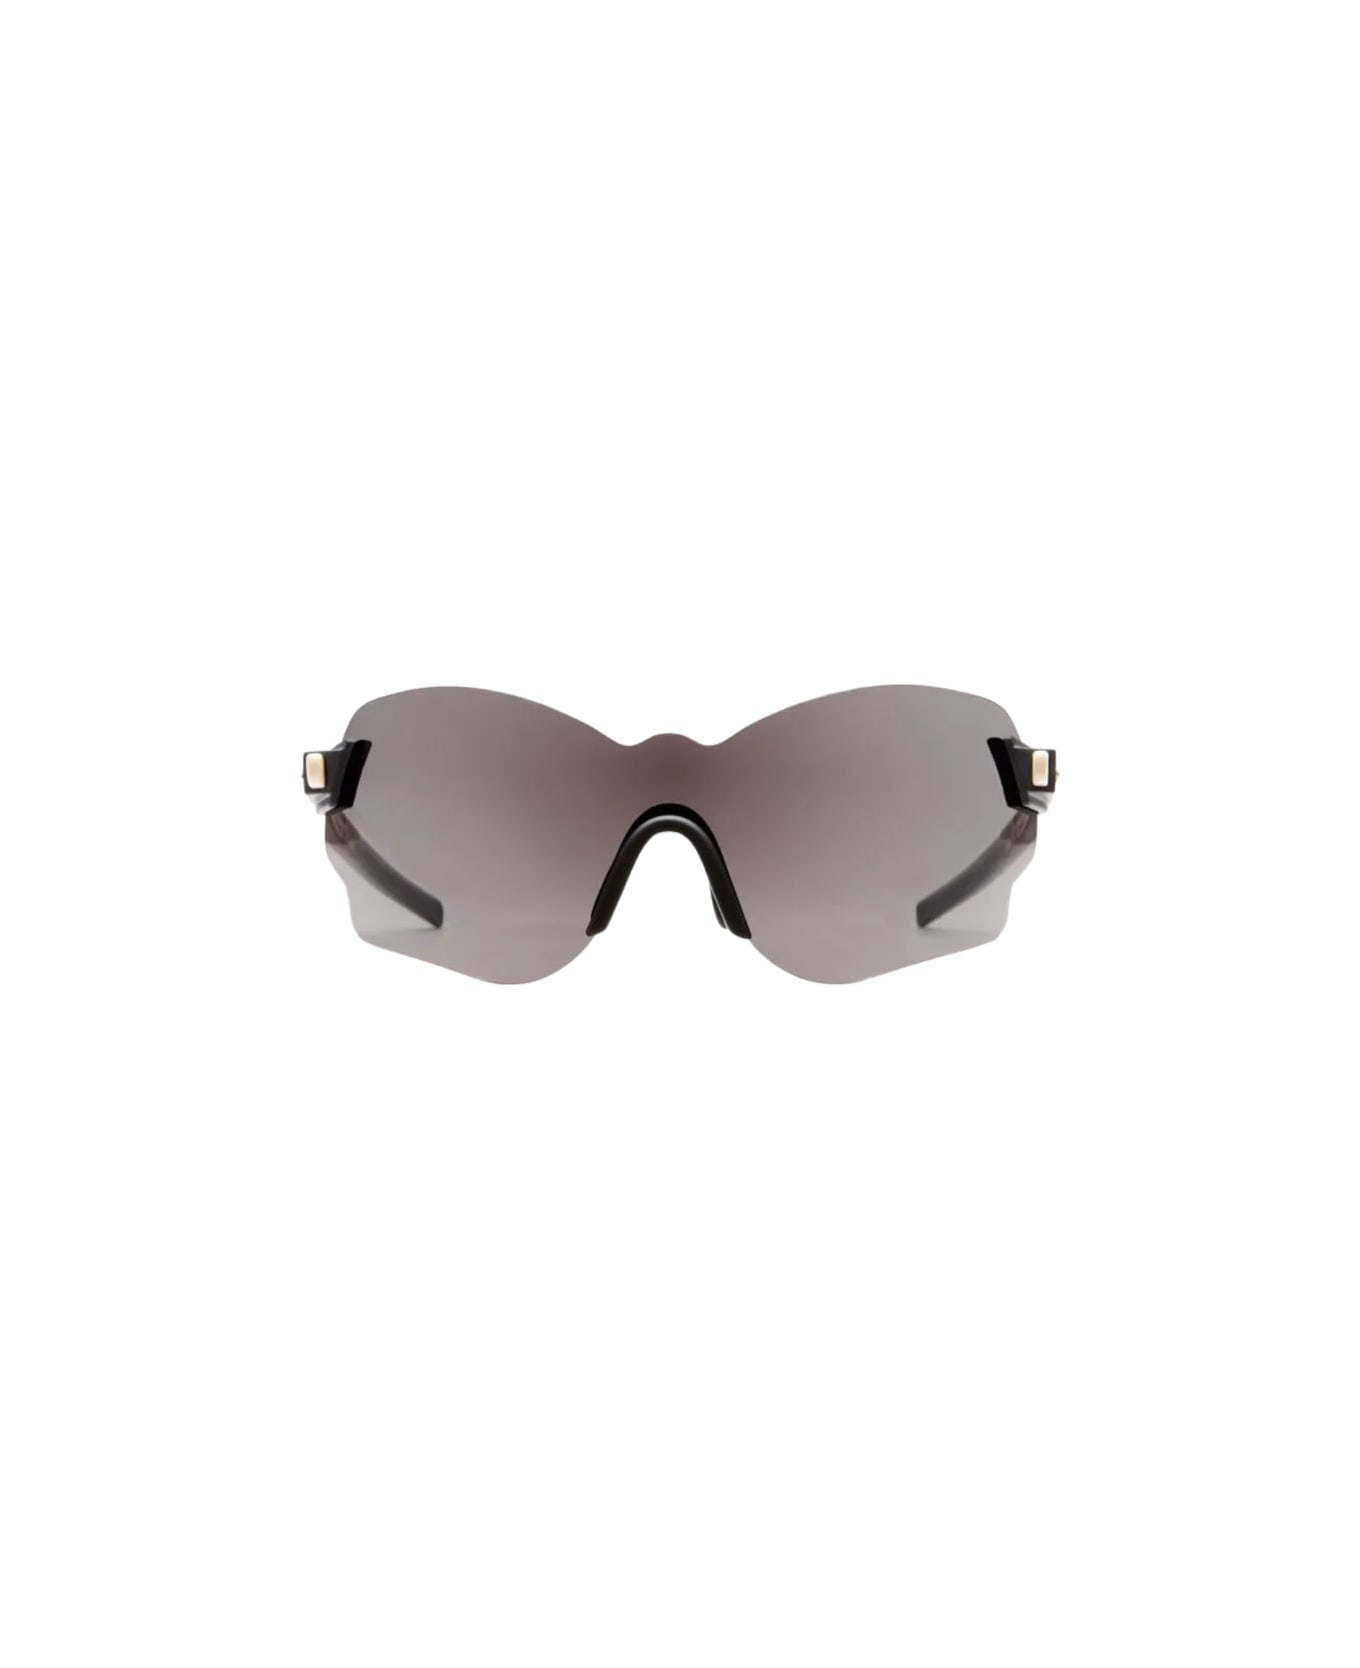 Kuboraum Maske E51 Sunglasses